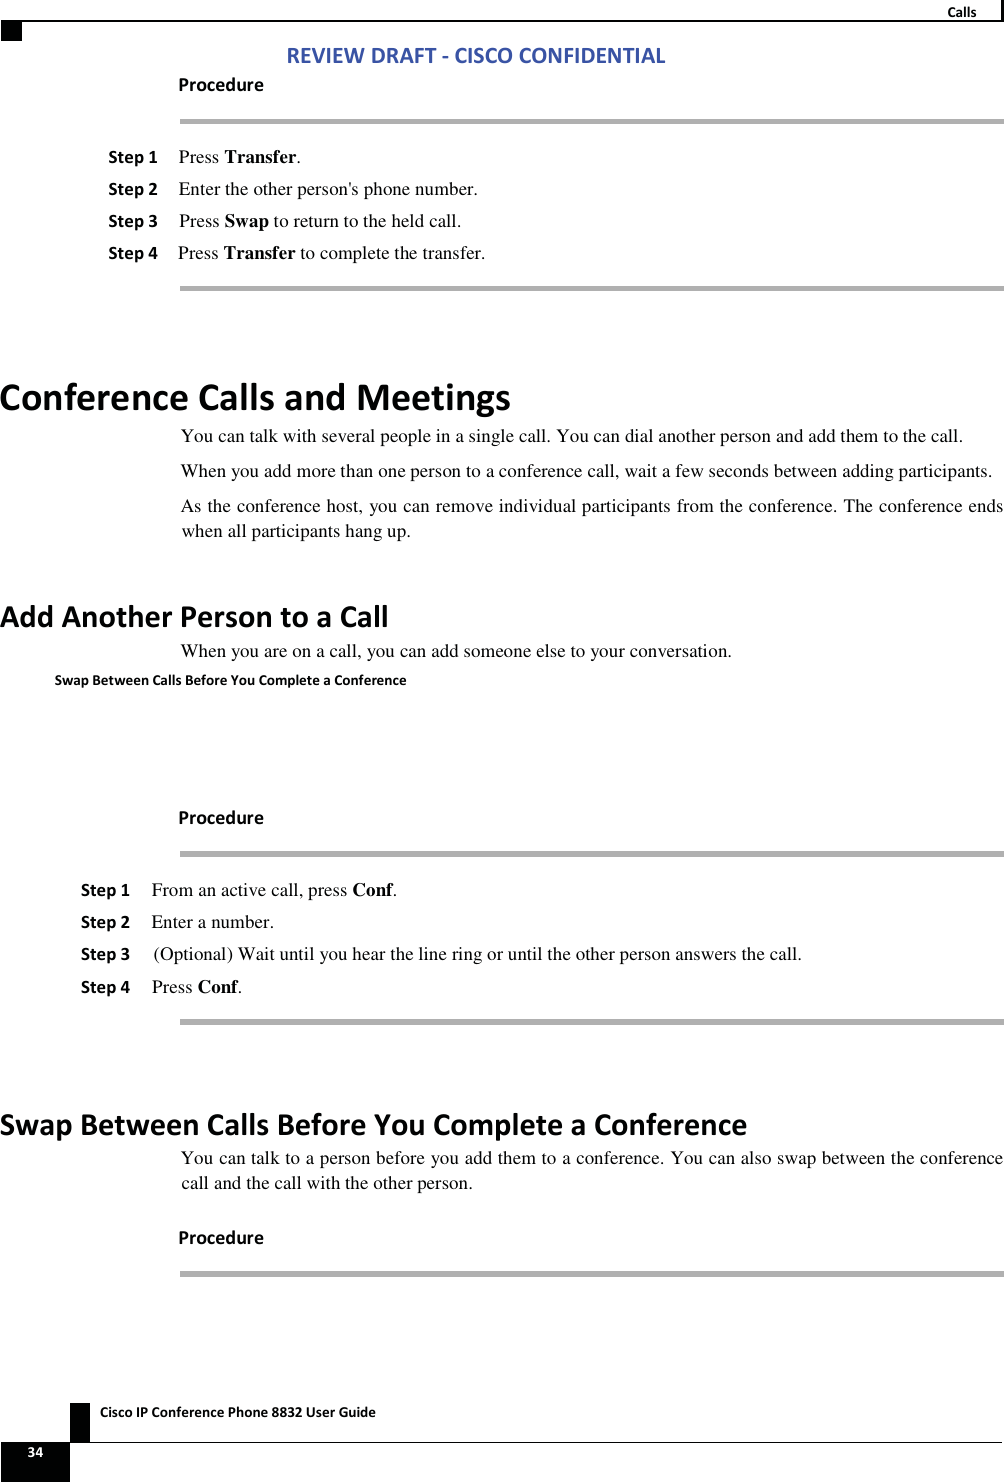 Zs/tZ&amp;dͲ/^KKE&amp;/Ed/&gt;   ŝƐĐŽ/WŽŶĨĞƌĞŶĐĞWŚŽŶĞϴϴϯϮhƐĞƌ&apos;ƵŝĚĞ ϯϰ  ĂůůƐ WƌŽĐĞĚƵƌĞ ^ƚĞƉϭ Press Transfer. ^ƚĞƉϮ Enter the other person&apos;s phone number. ^ƚĞƉϯ Press Swap to return to the held call. ^ƚĞƉϰ Press Transfer to complete the transfer.  ŽŶĨĞƌĞŶĐĞĂůůƐĂŶĚDĞĞƚŝŶŐƐYou can talk with several people in a single call. You can dial another person and add them to the call. When you add more than one person to a conference call, wait a few seconds between adding participants. As the conference host, you can remove individual participants from the conference. The conference ends when all participants hang up. ĚĚŶŽƚŚĞƌWĞƌƐŽŶƚŽĂĂůůWhen you are on a call, you can add someone else to your conversation. ^ǁĂƉĞƚǁĞĞŶĂůůƐĞĨŽƌĞzŽƵŽŵƉůĞƚĞĂŽŶĨĞƌĞŶĐĞ WƌŽĐĞĚƵƌĞ ^ƚĞƉϭ From an active call, press Conf. ^ƚĞƉϮ Enter a number. ^ƚĞƉϯ (Optional) Wait until you hear the line ring or until the other person answers the call. ^ƚĞƉϰ Press Conf.  ^ǁĂƉĞƚǁĞĞŶĂůůƐĞĨŽƌĞzŽƵŽŵƉůĞƚĞĂŽŶĨĞƌĞŶĐĞYou can talk to a person before you add them to a conference. You can also swap between the conference call and the call with the other person. WƌŽĐĞĚƵƌĞ 